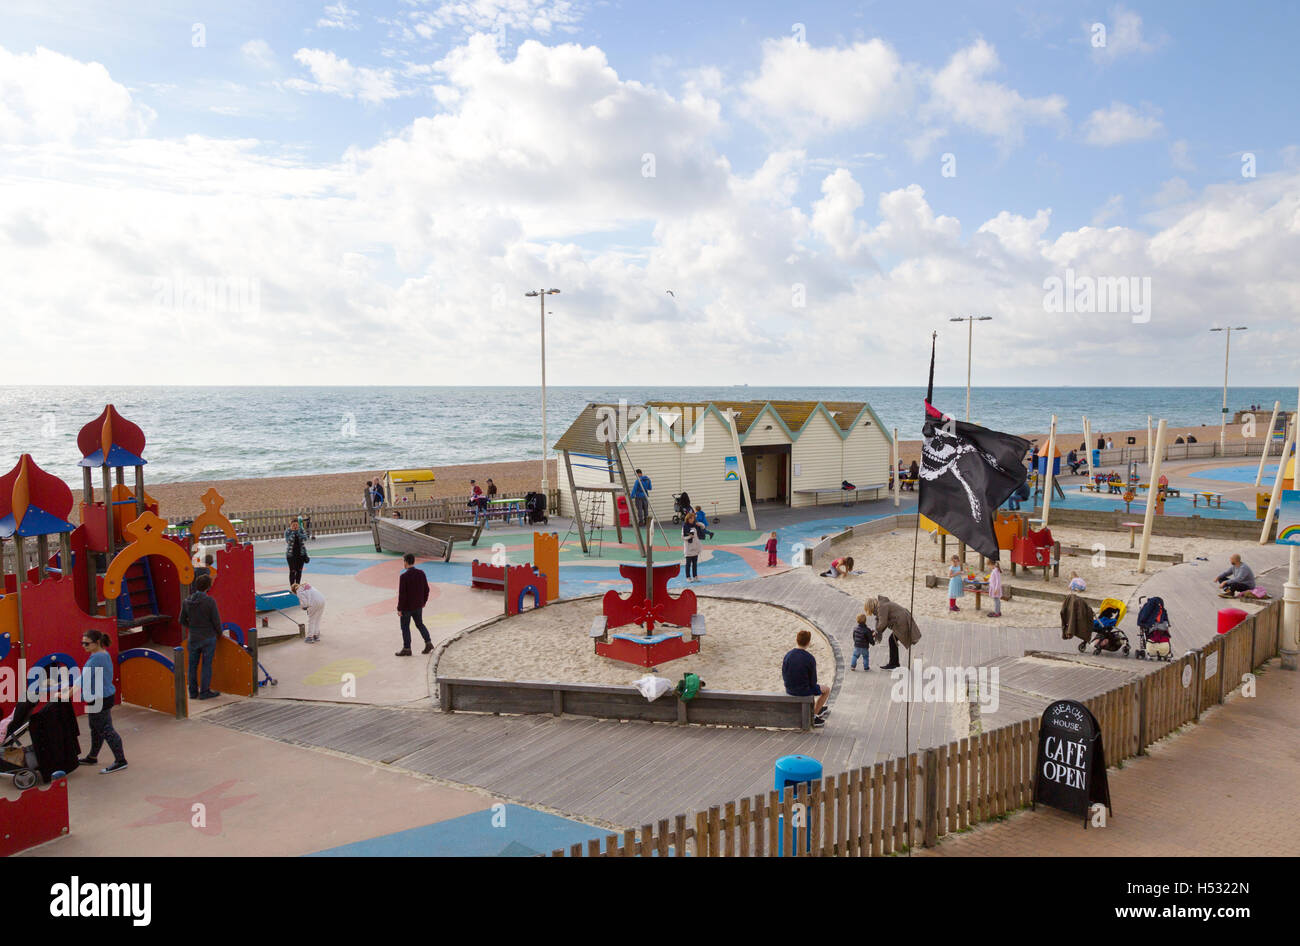 Bambini che giocano nei giochi per bambini area, Brighton Seafront, Brighton East Sussex England Regno Unito Foto Stock